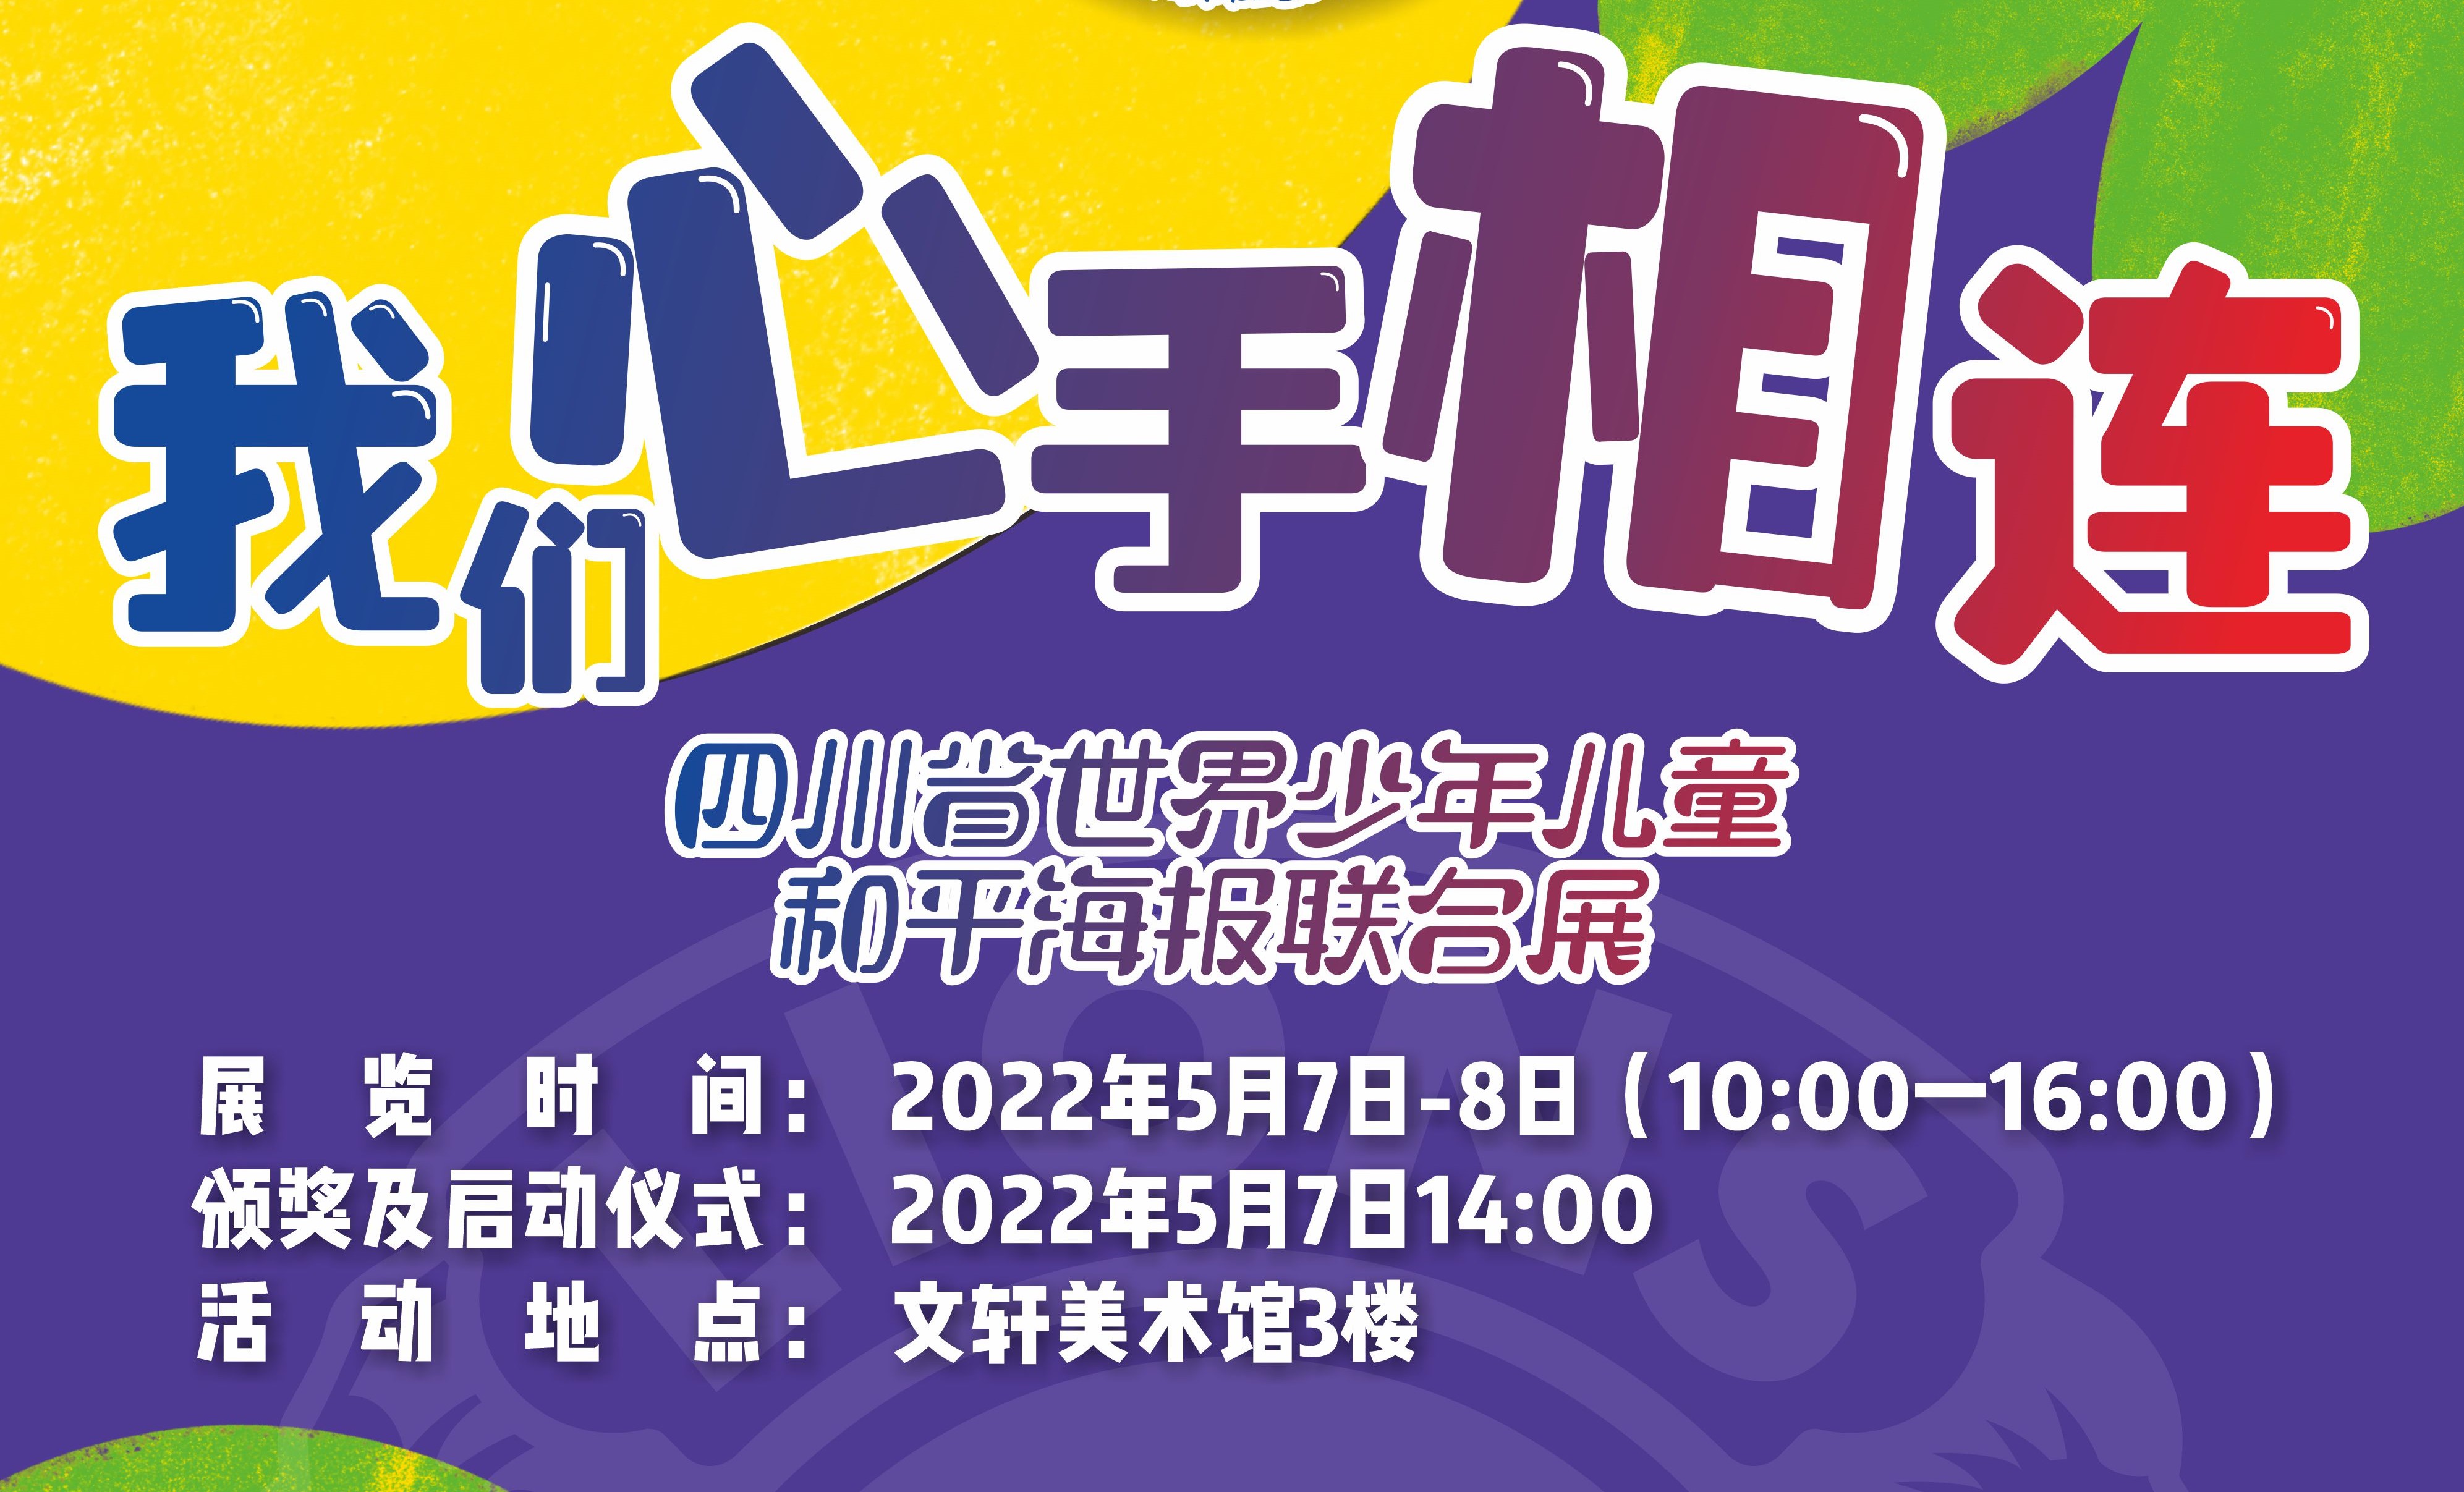 四川省世界少年儿童和平海报联合展将于2022年5月7-8日举行